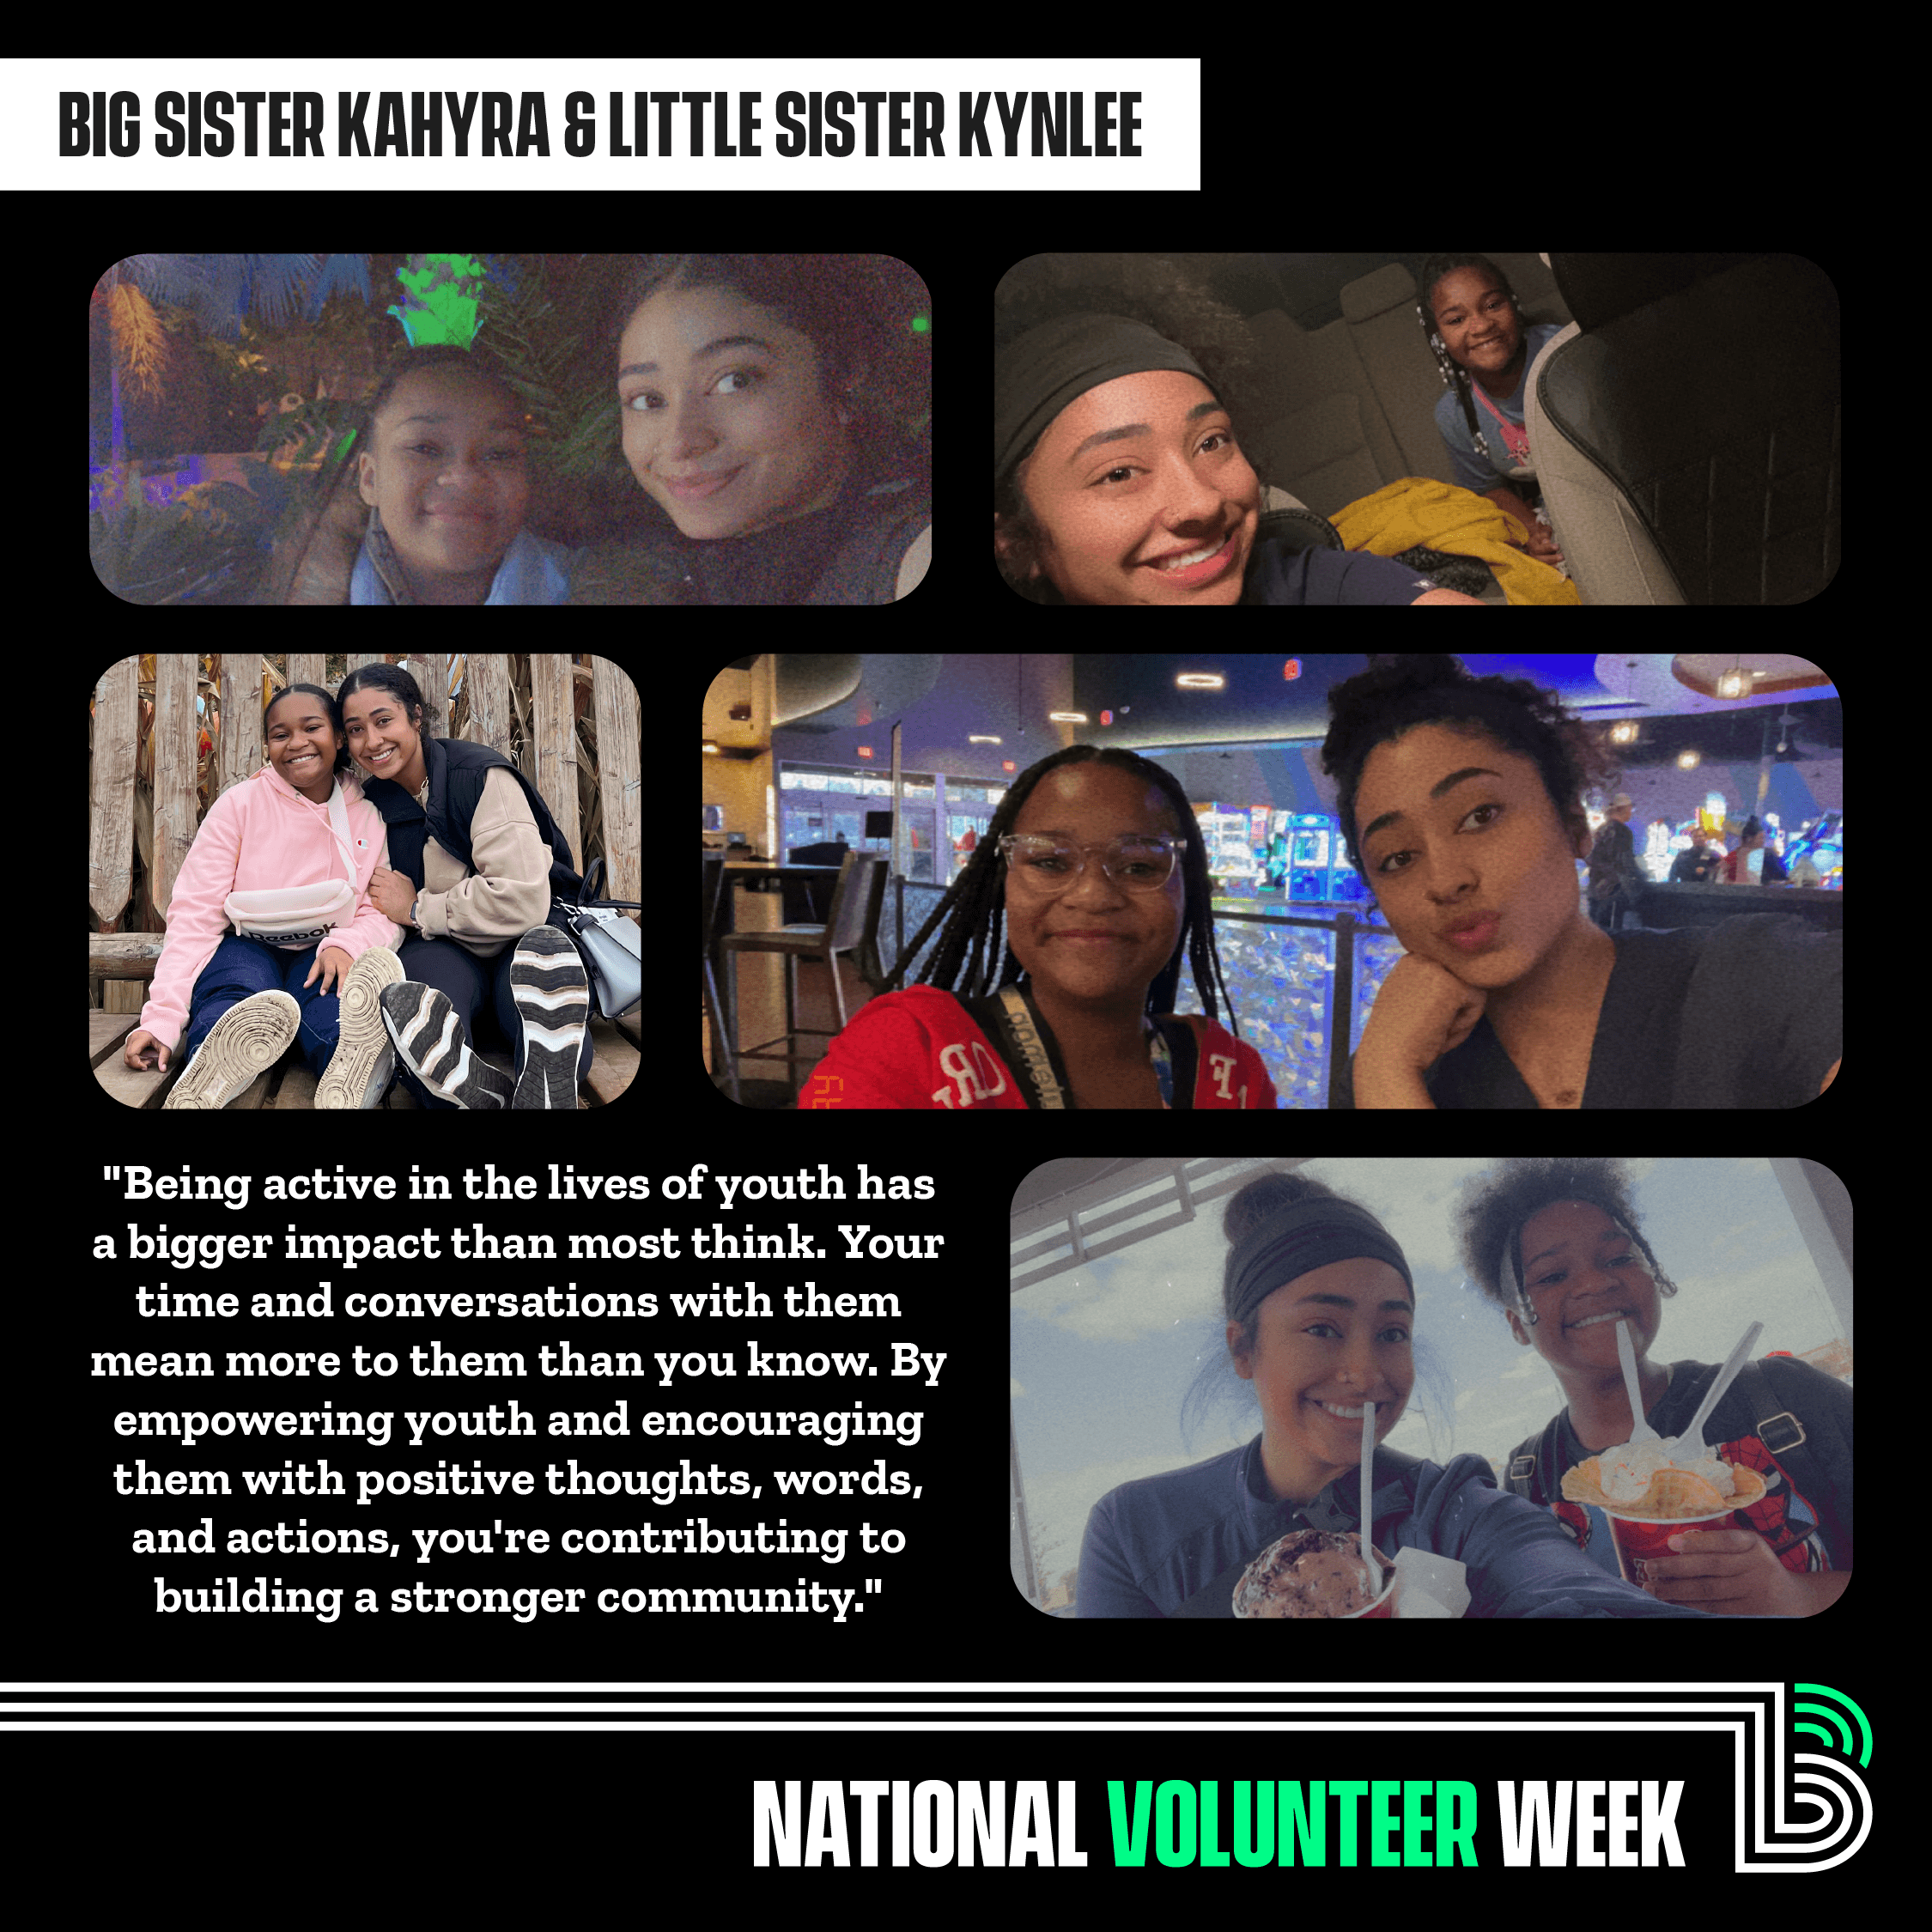 National Volunteer Week Spotlight: Big Sister Kahyra and Little Sister Kynlee